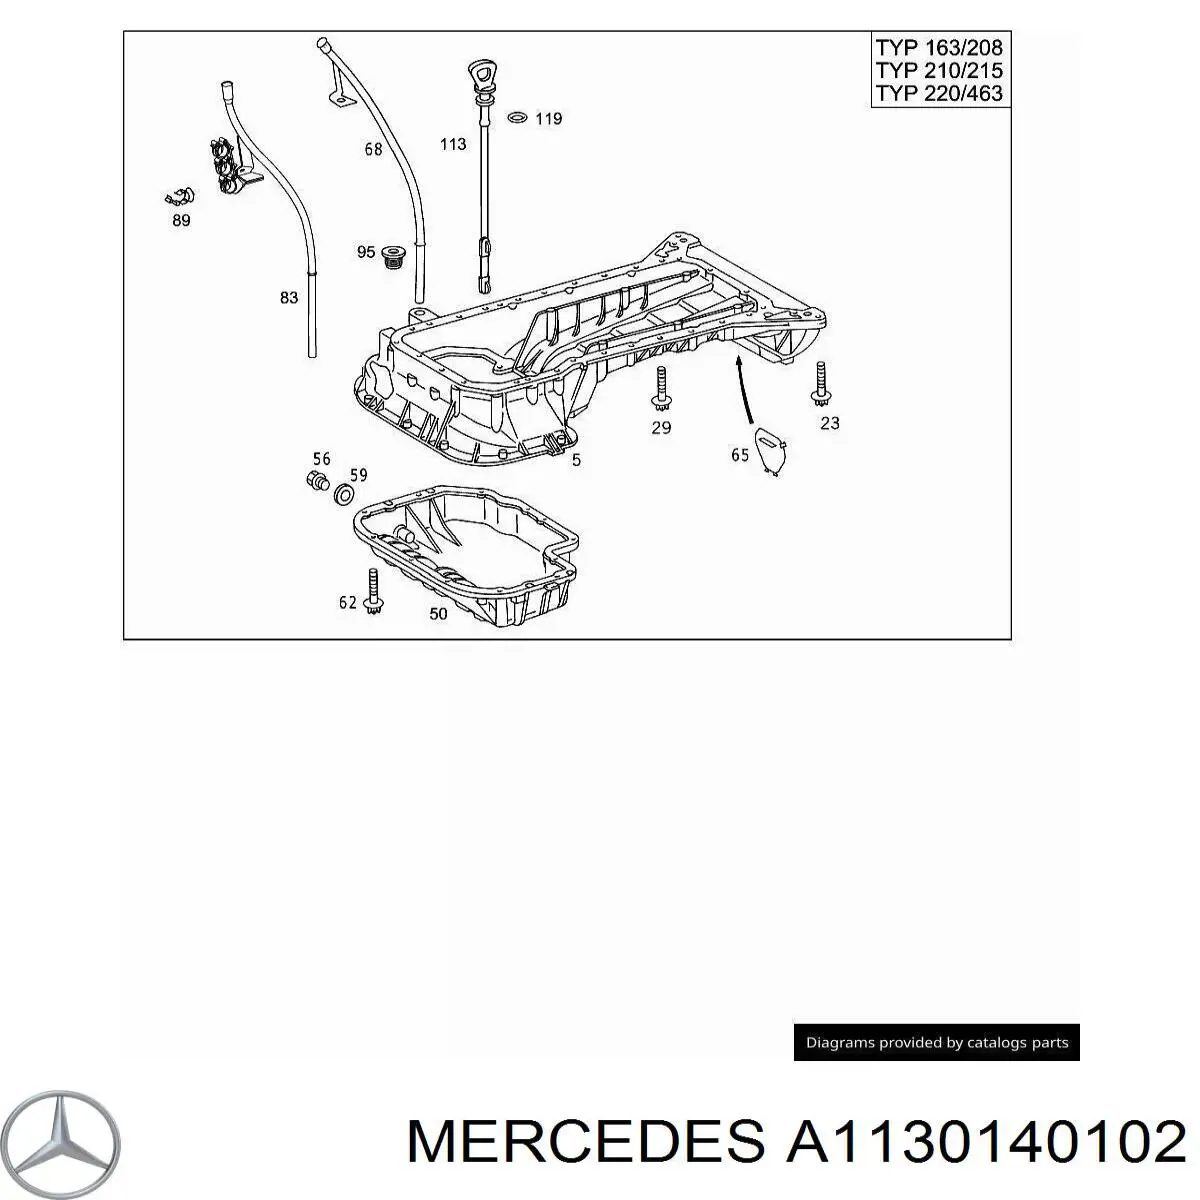 A1130140102 Mercedes поддон масляный картера двигателя, верхняя часть